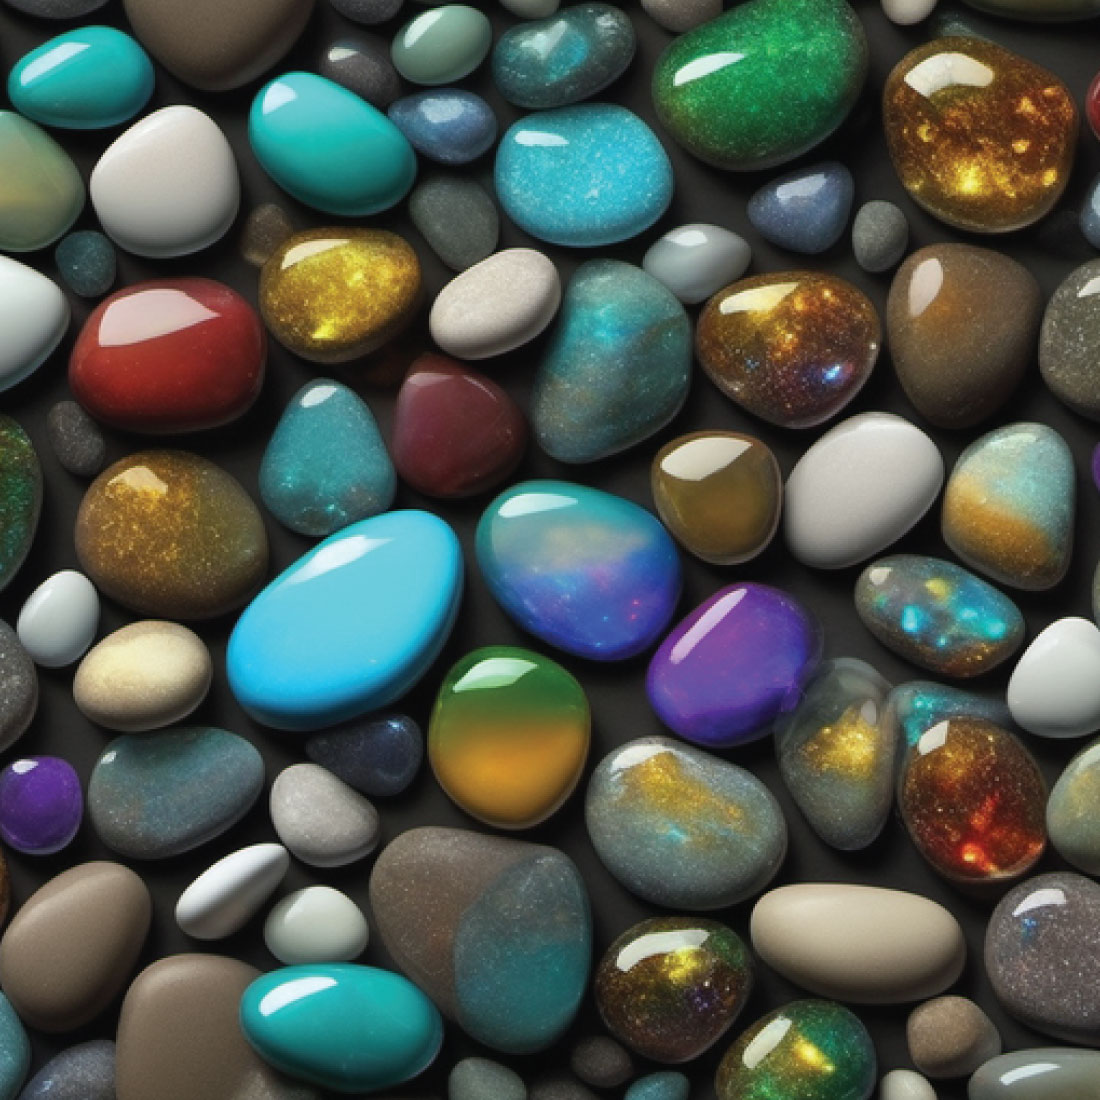 1100 x 1100 px shiny glittery pebble stones 6 538